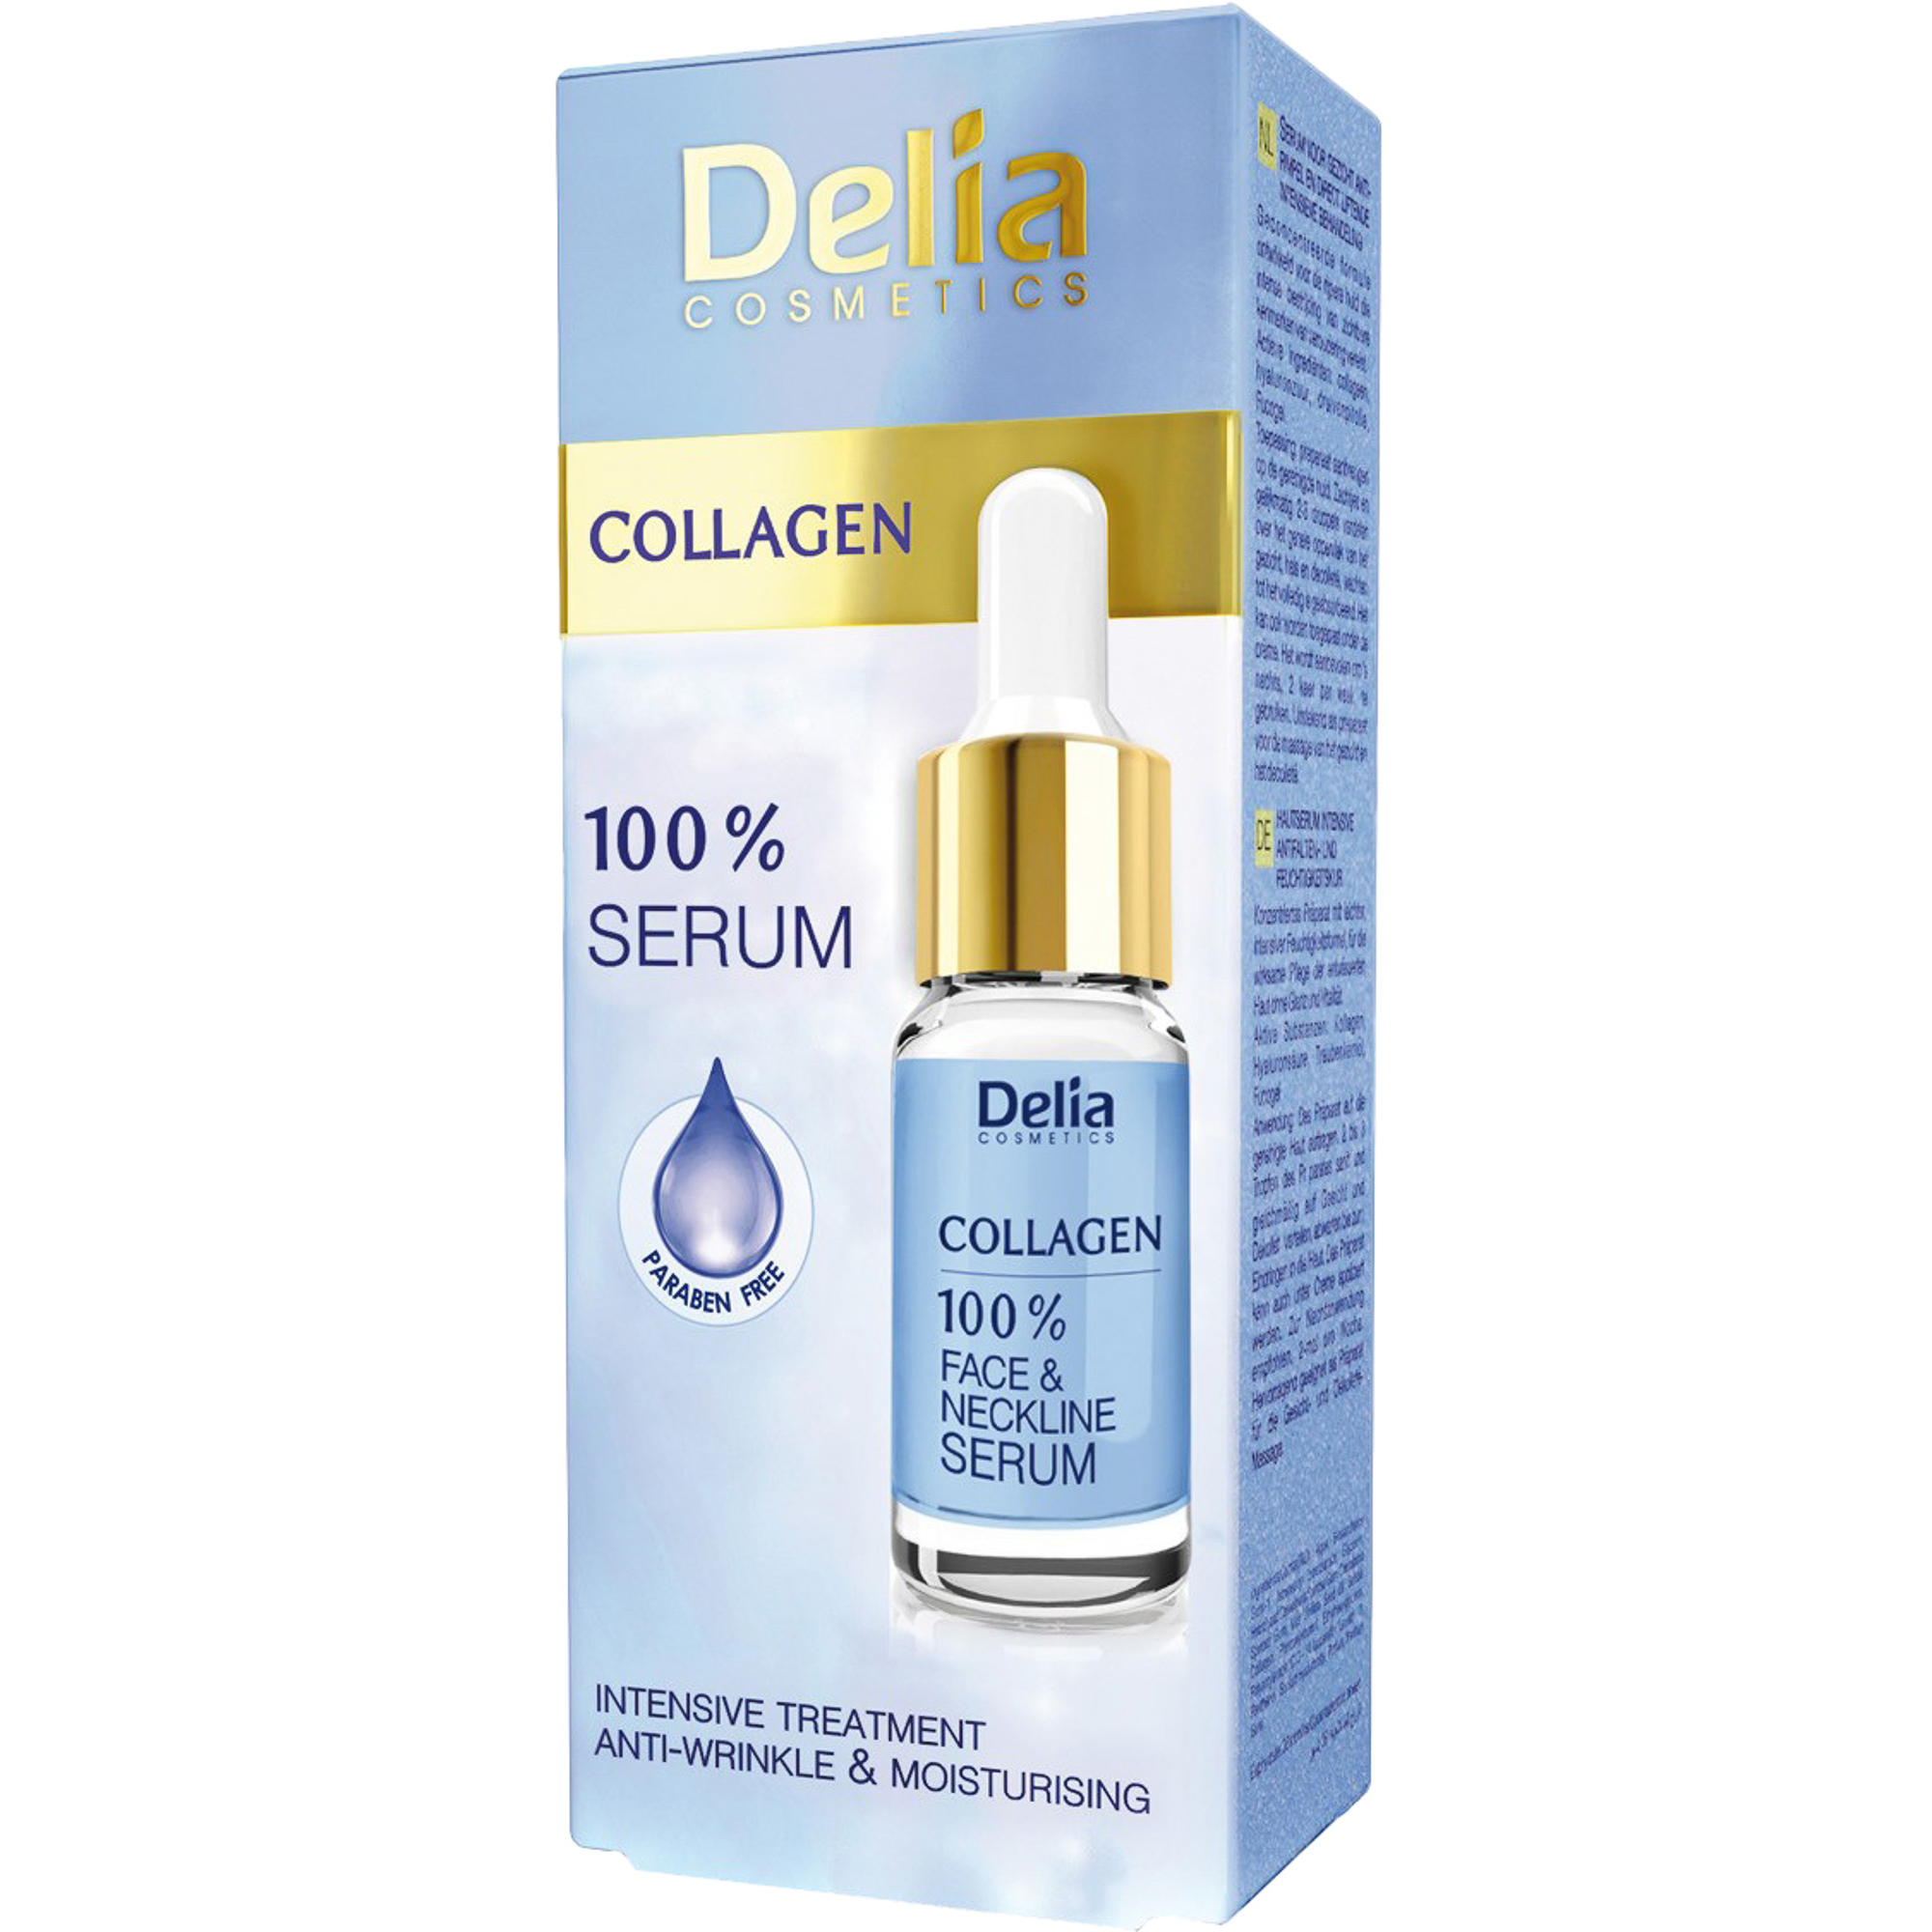 Сыворотка для лица, шеи и декольте Delia cosmetics Collagen от морщин увлажняющая интенсивная терапия 10 мл